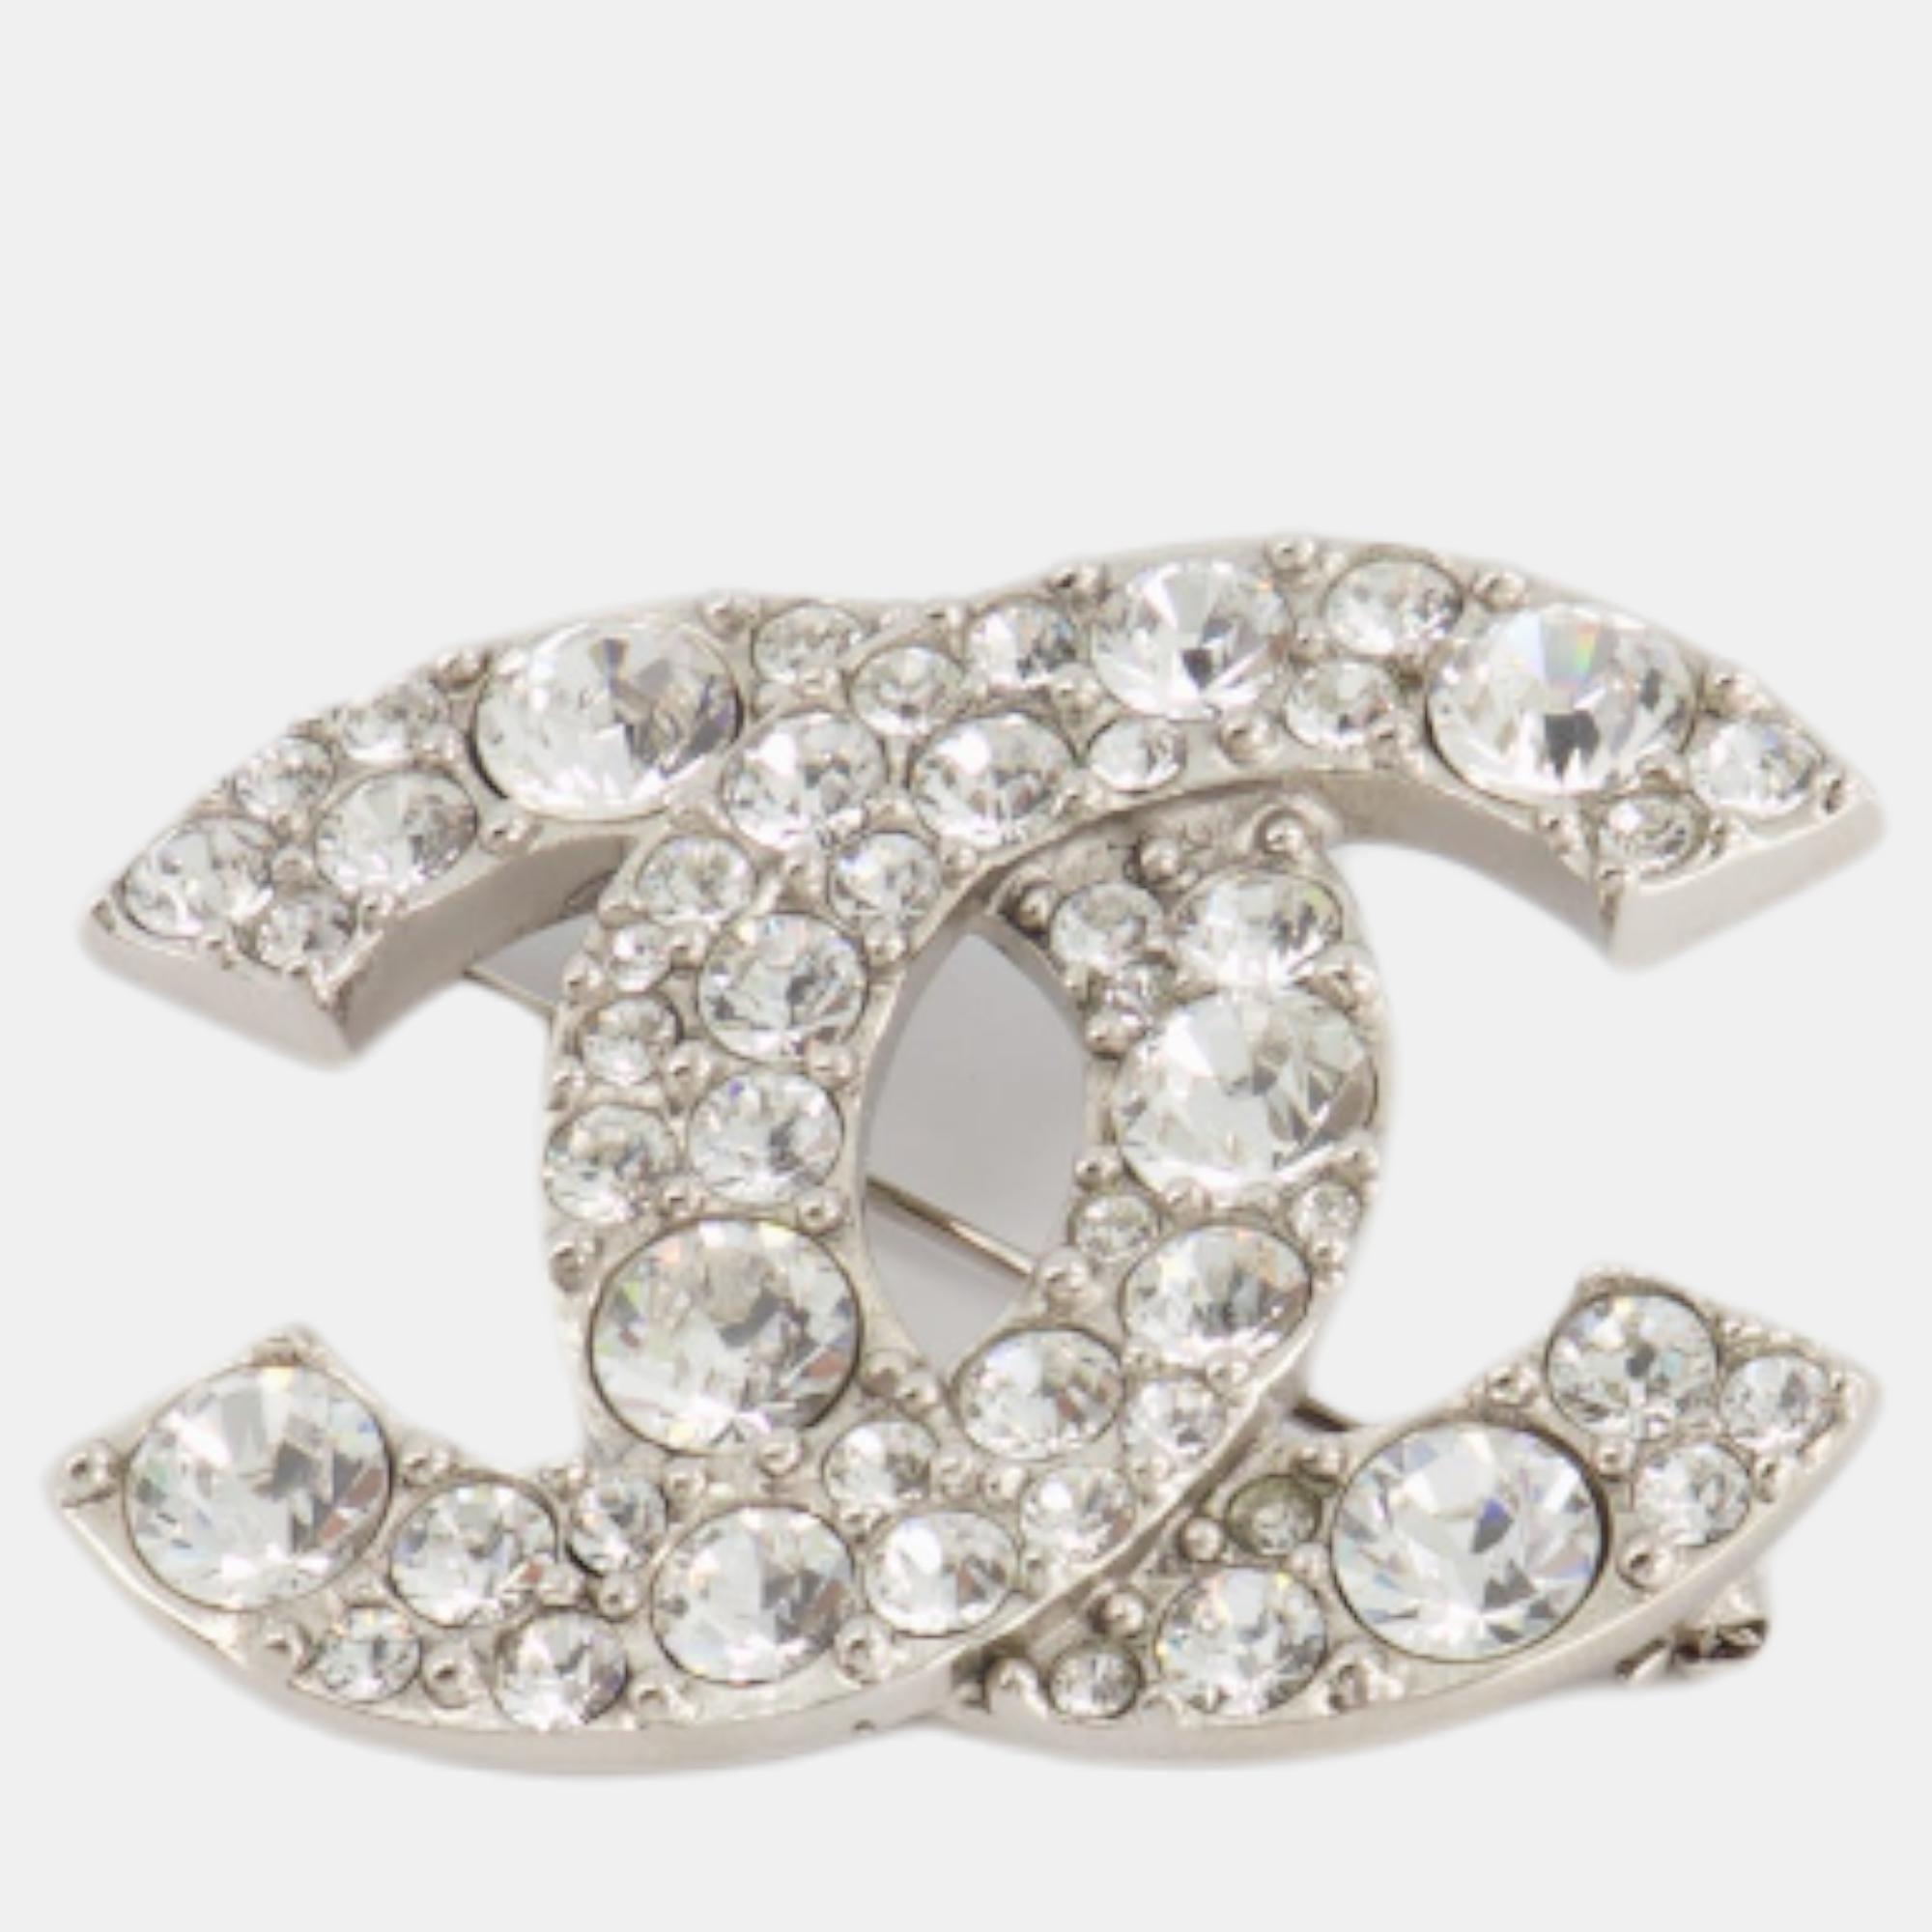 Chanel Silver Large CC Logo Crystal Brooch